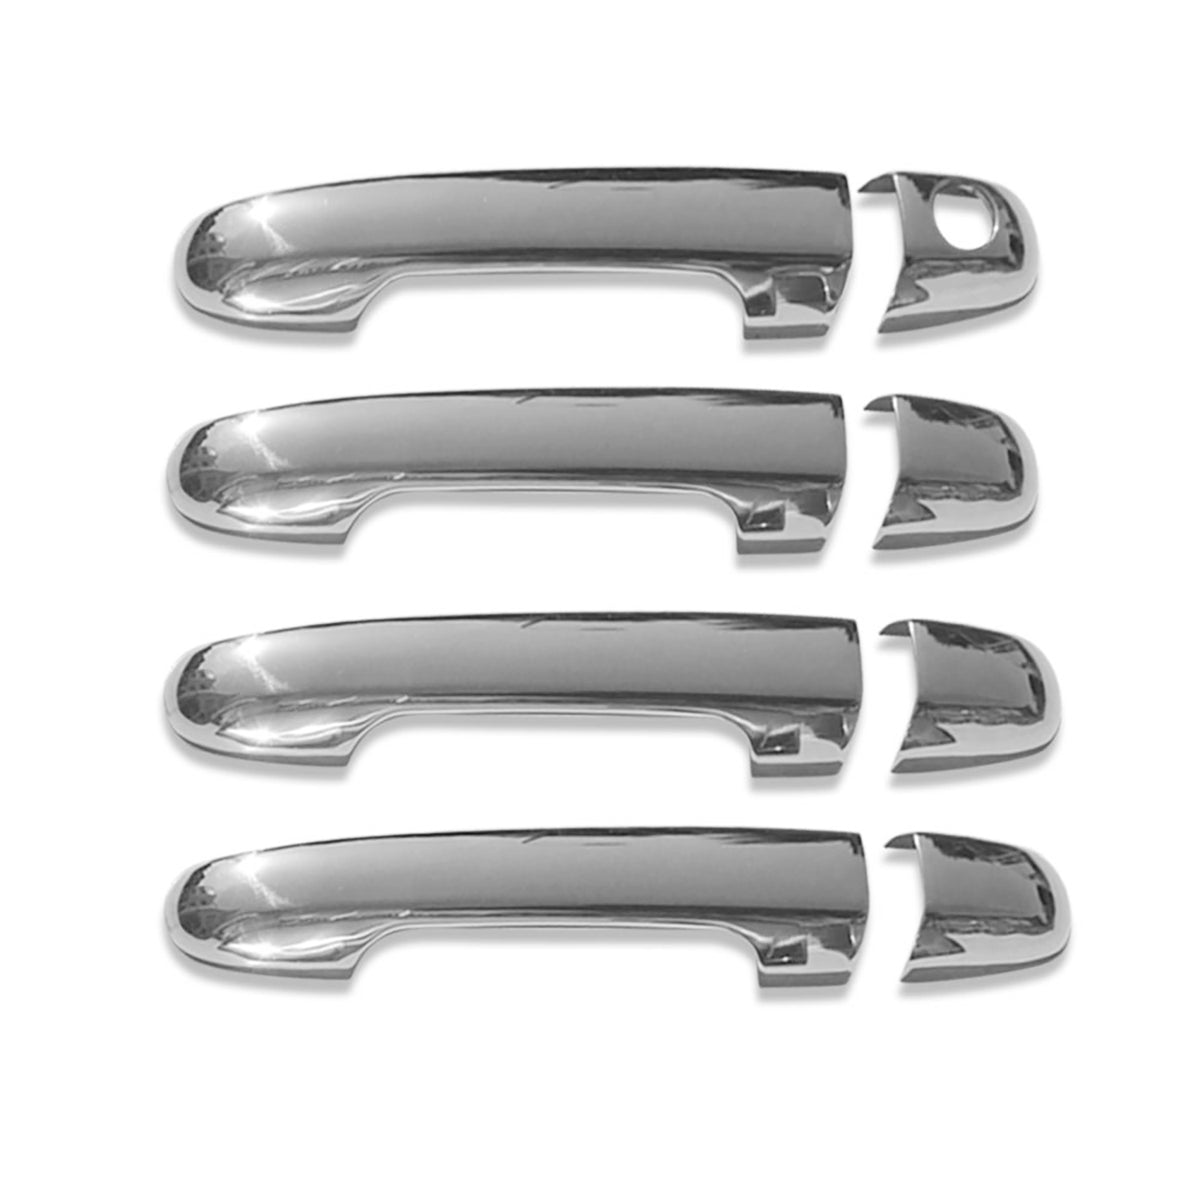 Door handle cover door handle caps for Kia Ceed 2006-2012 4-door stainless steel silver 4x